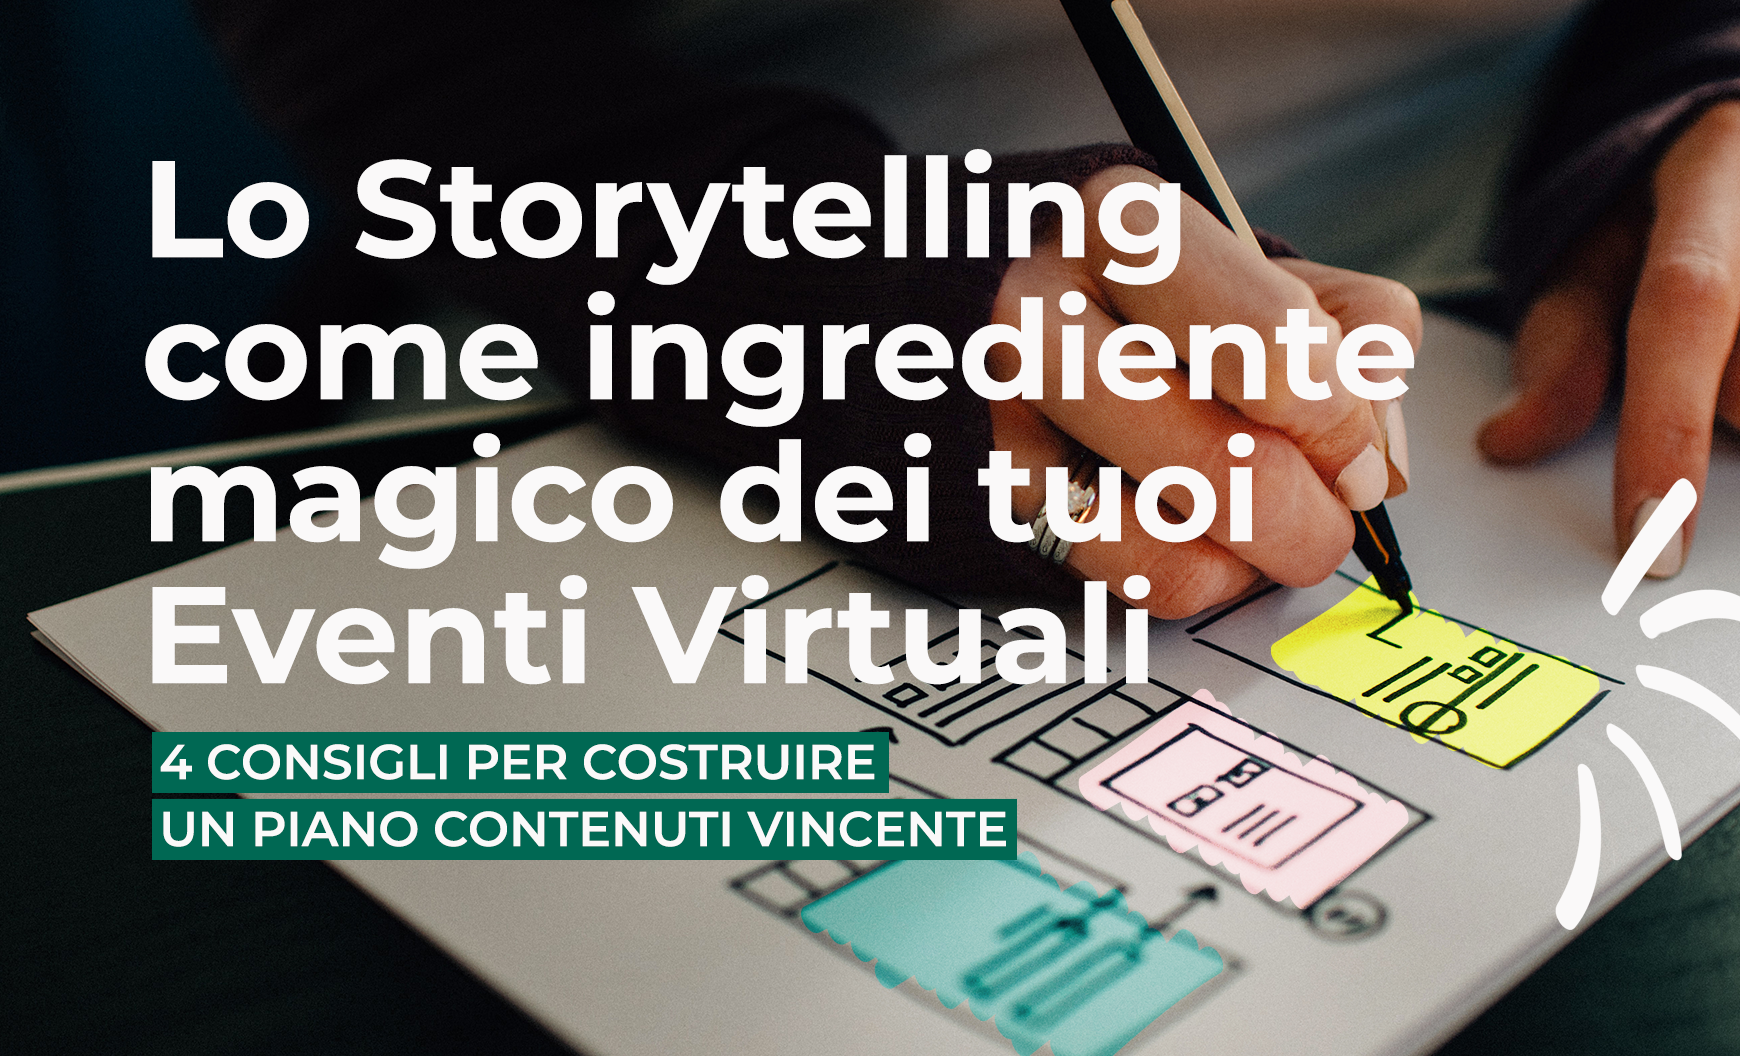 Lo Storytelling come ingrediente magico degli Eventi Virtuali